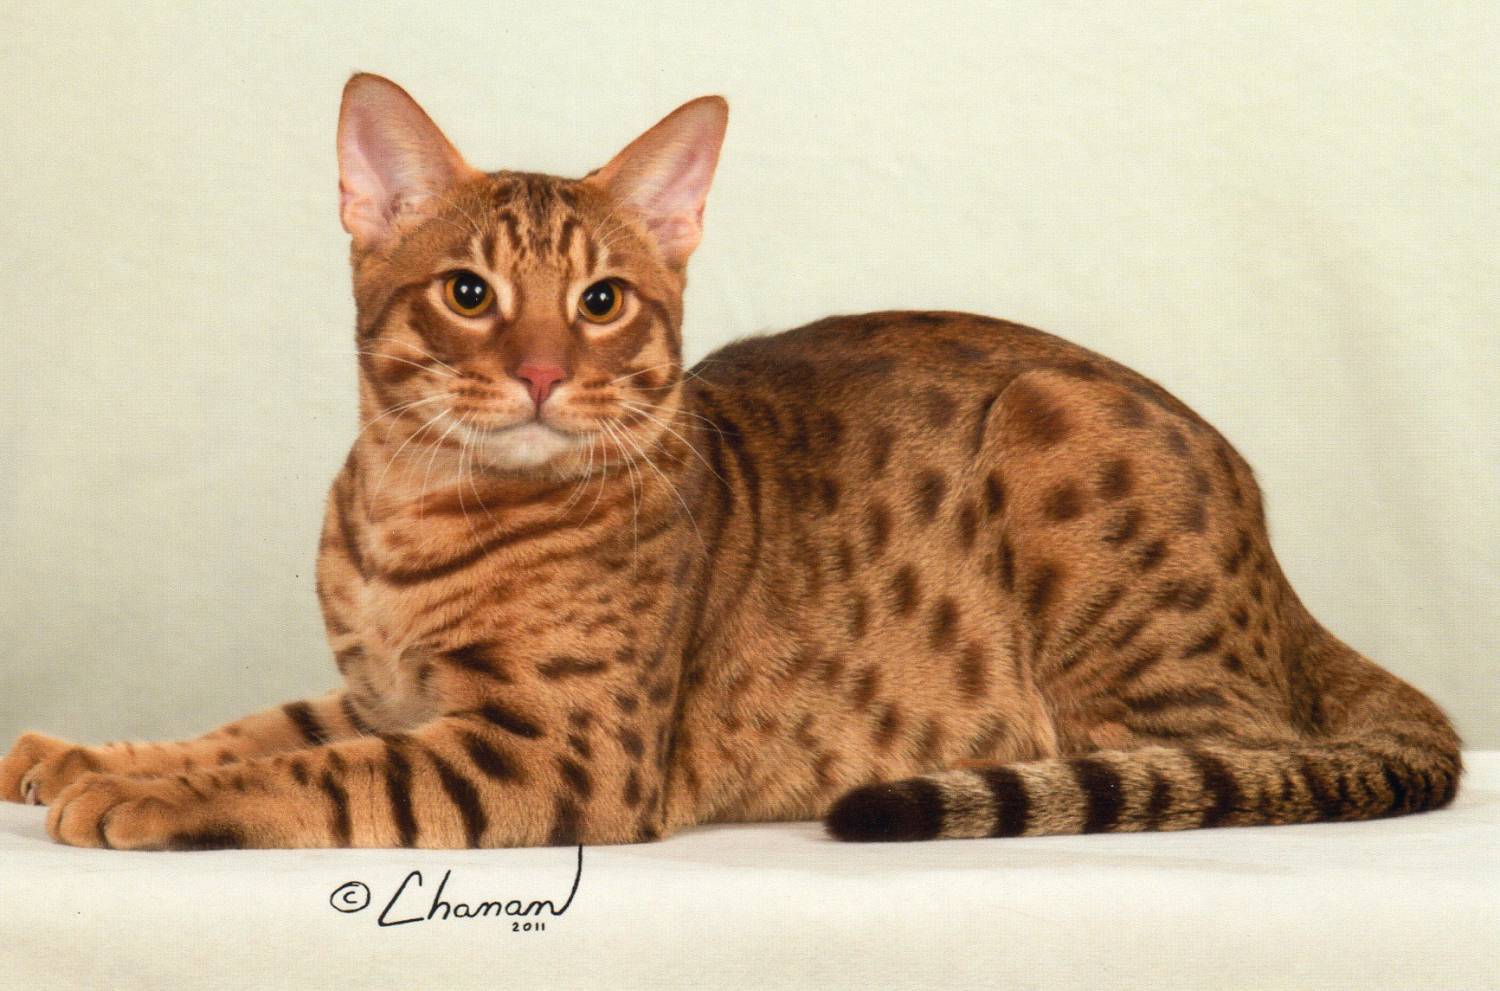 Описание невской маскарадной кошки с фото: окрасы, характер, особенности ухода за животным